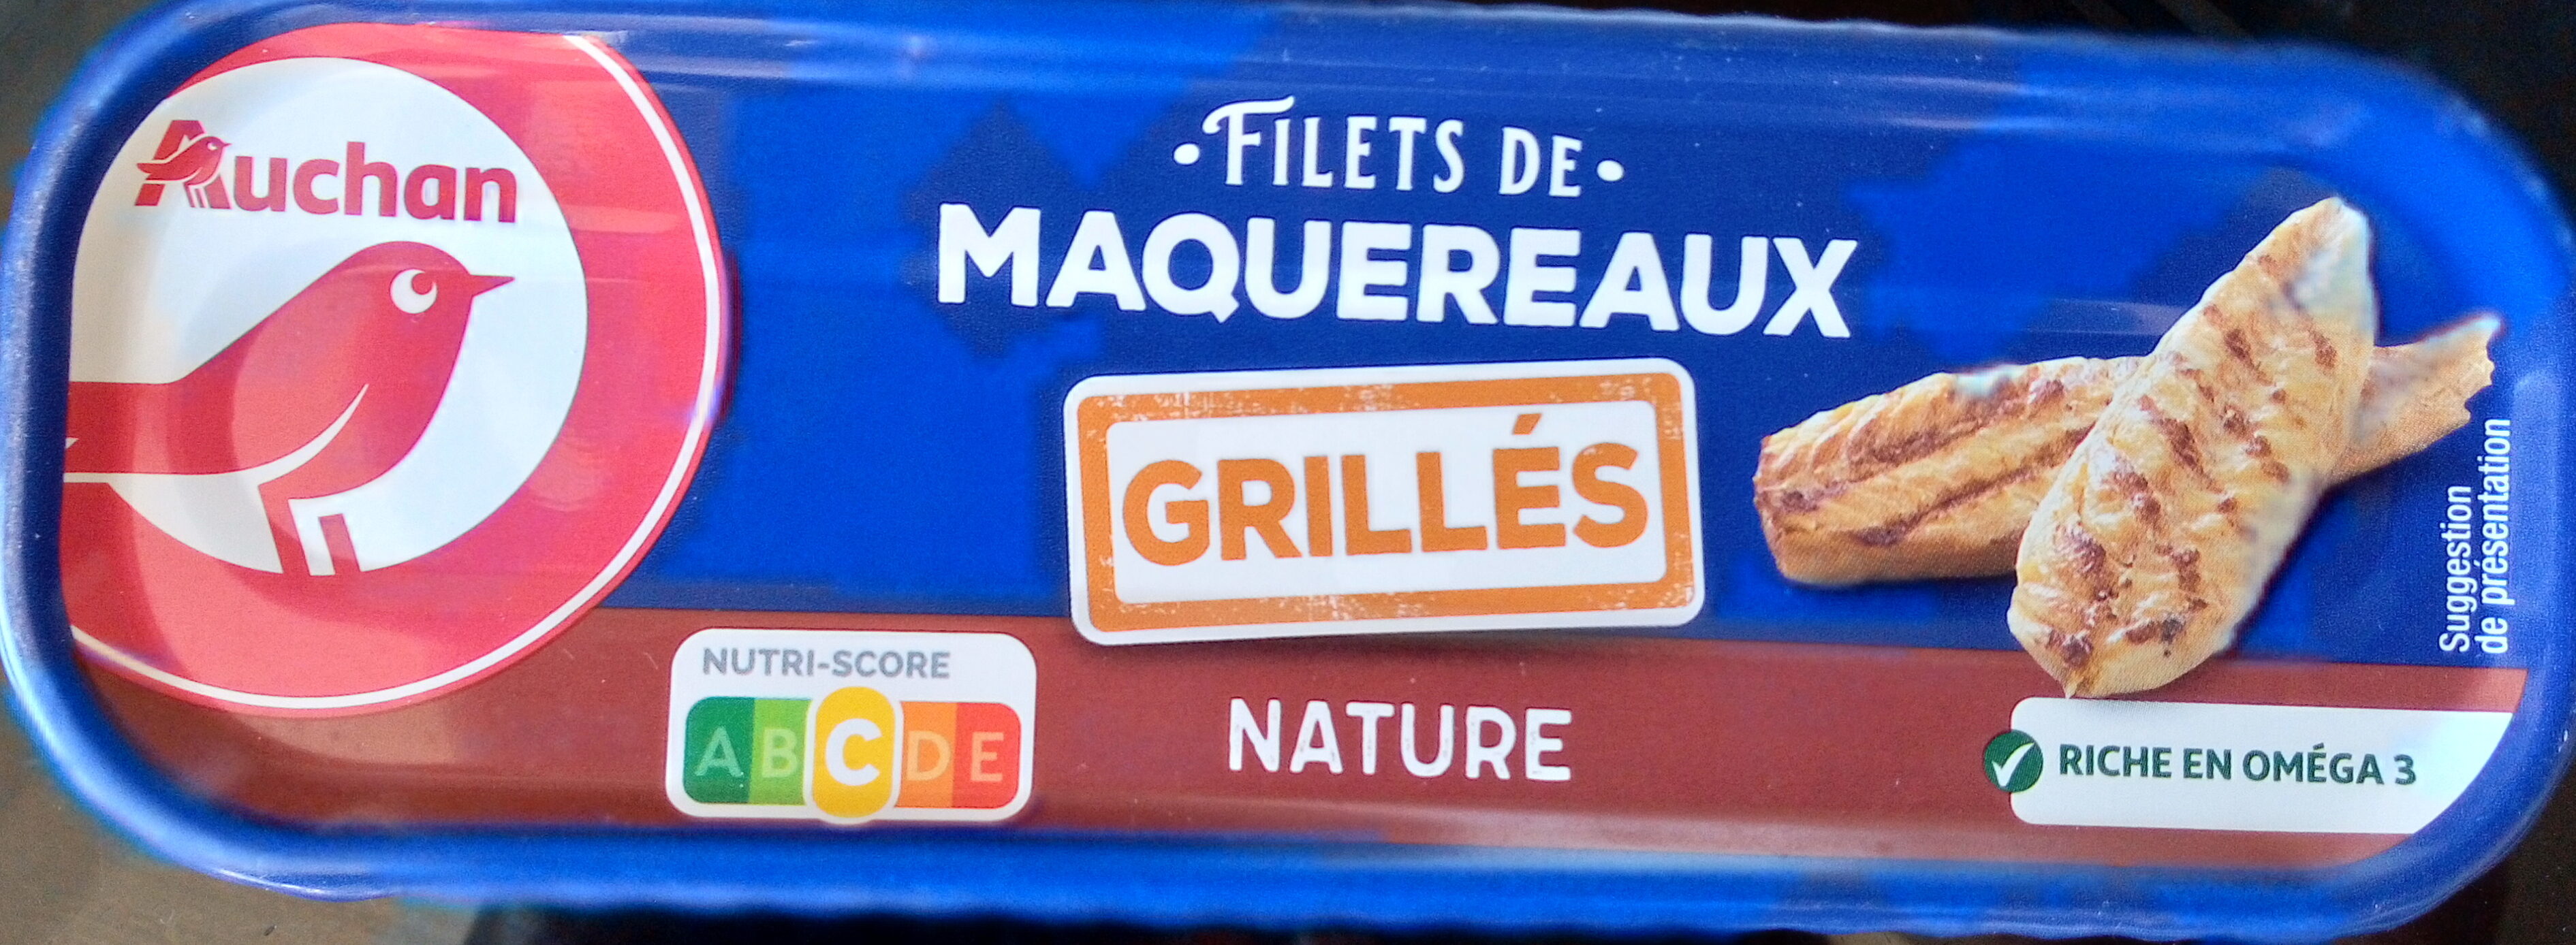 Filets de maquereaux grillés nature - Produkt - fr